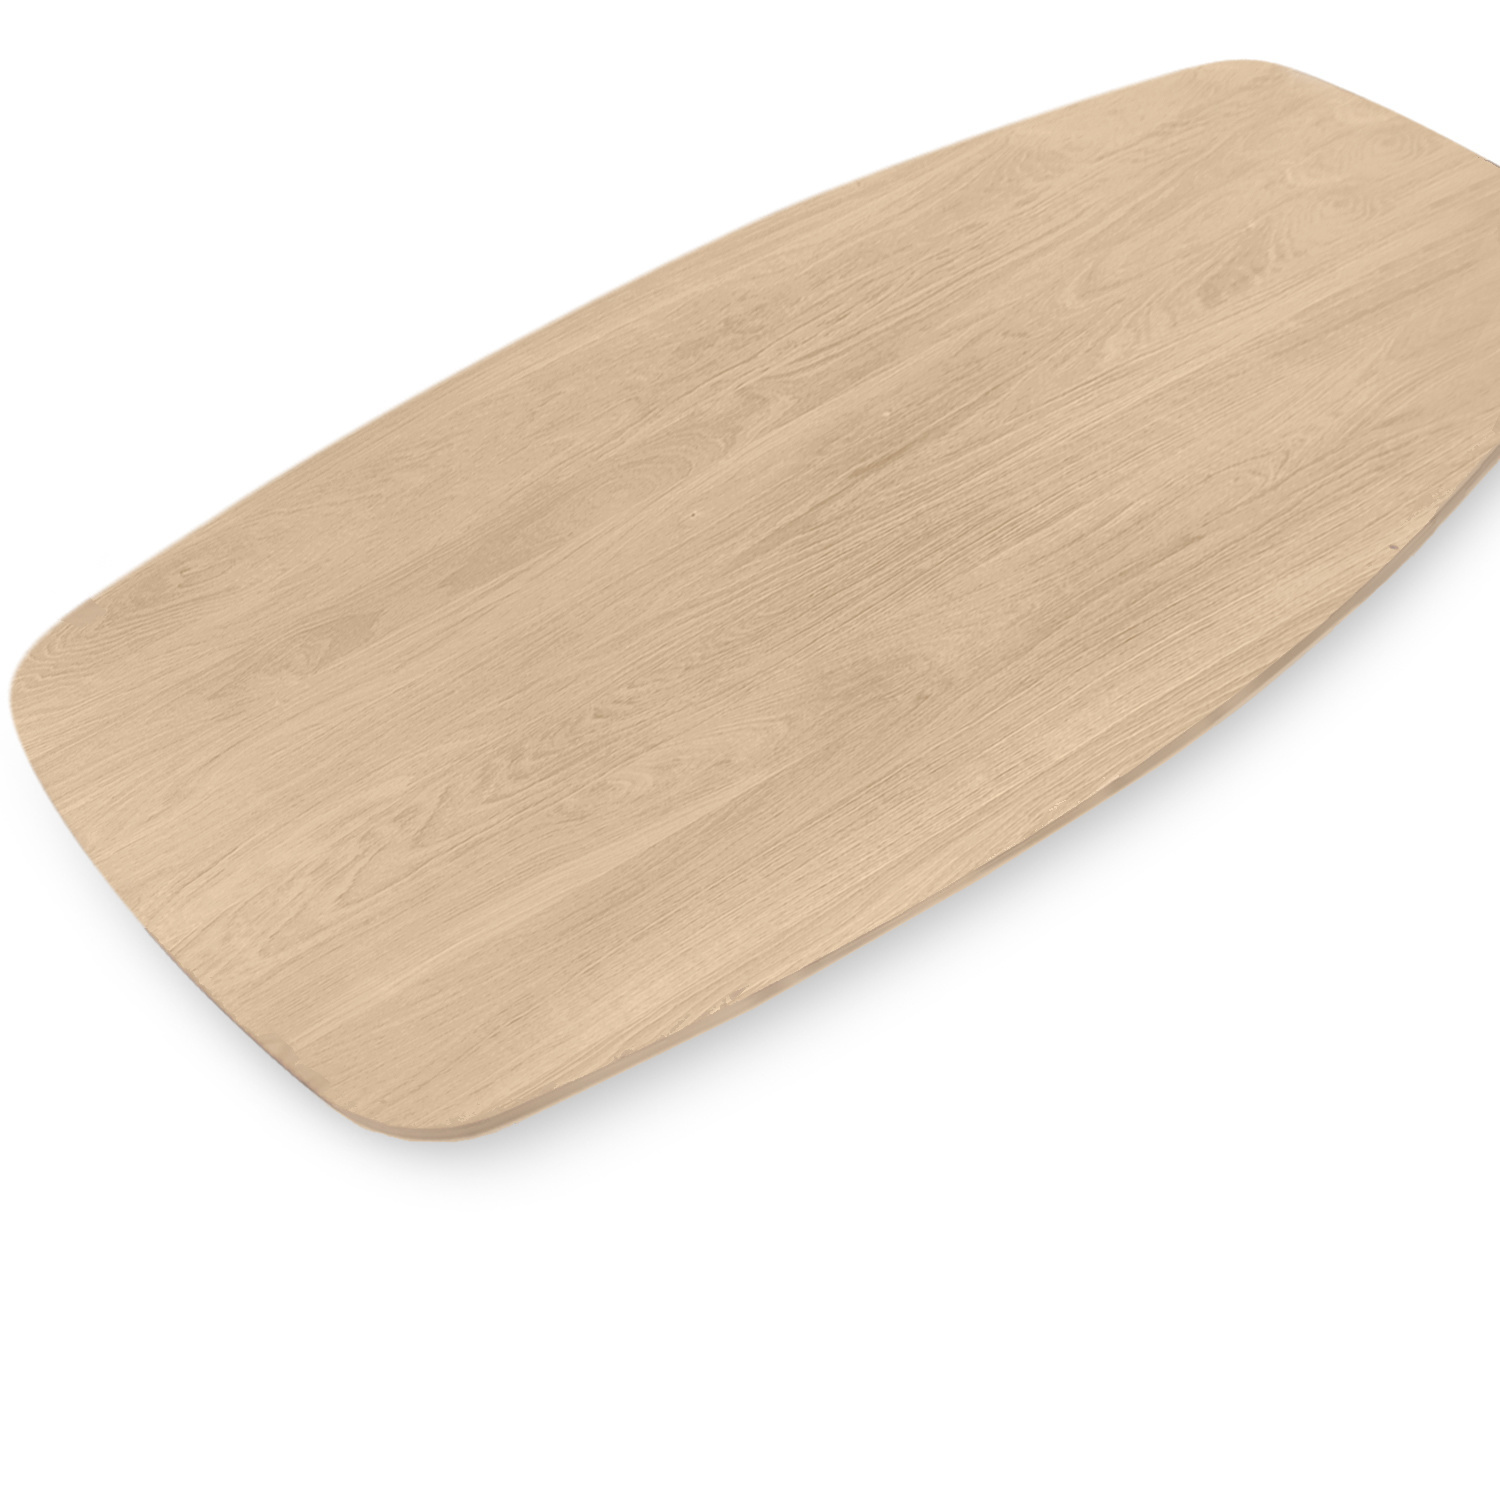  Tischplatte Eiche dänisch-oval - 2,7 cm dick (1-Schicht) - Breite Lamellen (10 - 12 cm breit) - Eichenholz A-Qualität - Bootsform - verleimt & künstlich getrocknet (HF 8-12%) - verschiedene Größen